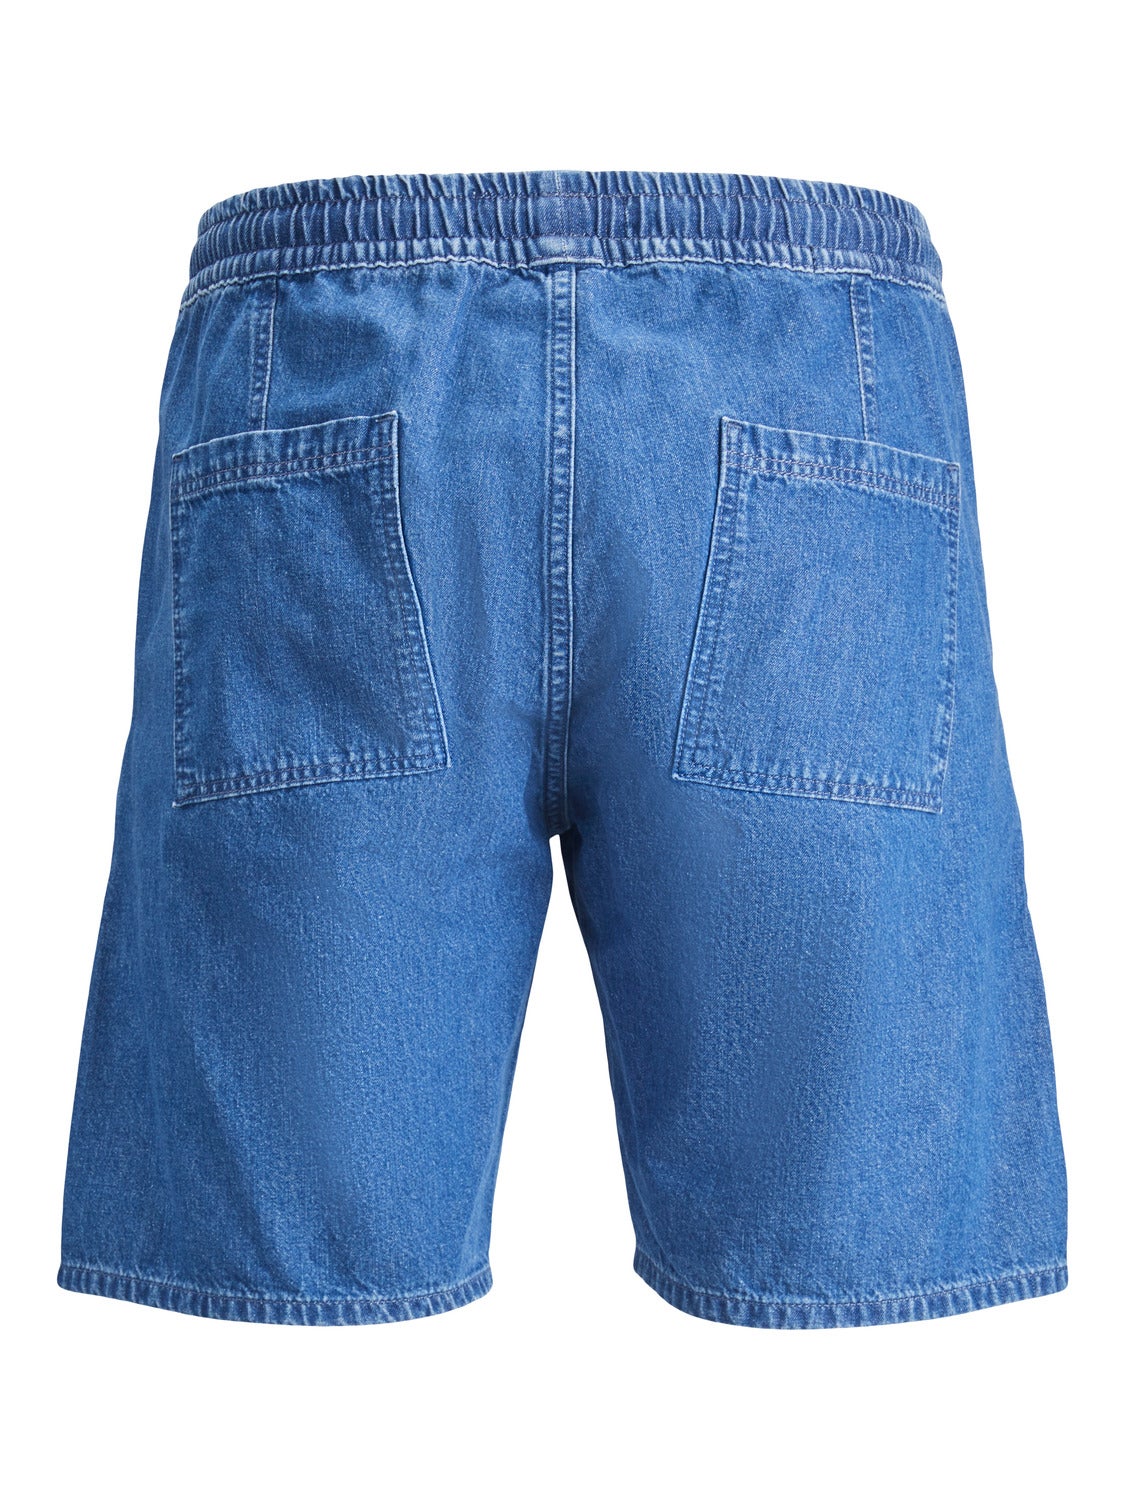 Short jeans Jordache Blue size 24 US in Cotton - 17421236